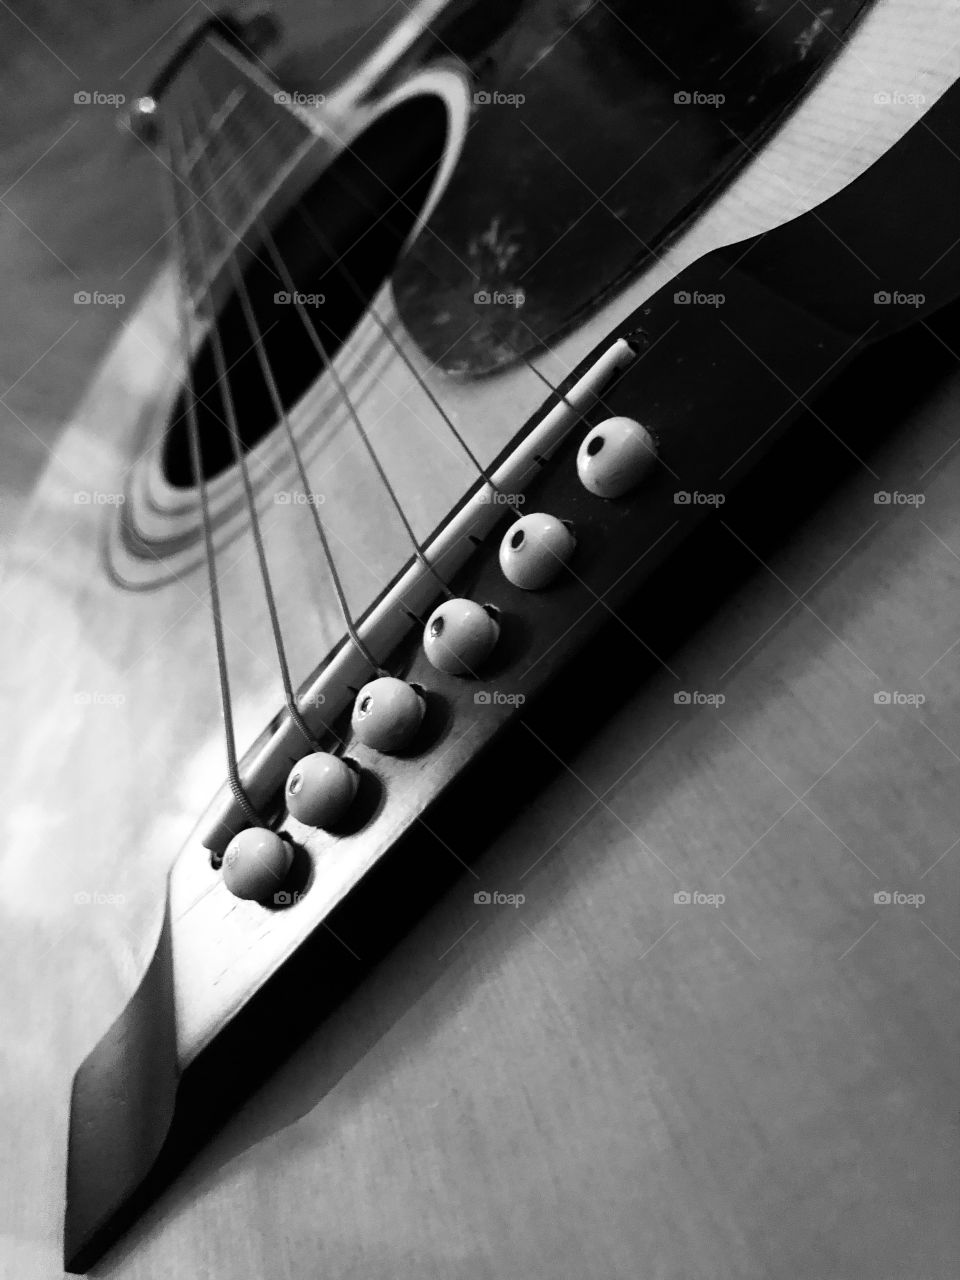 Guitar close up